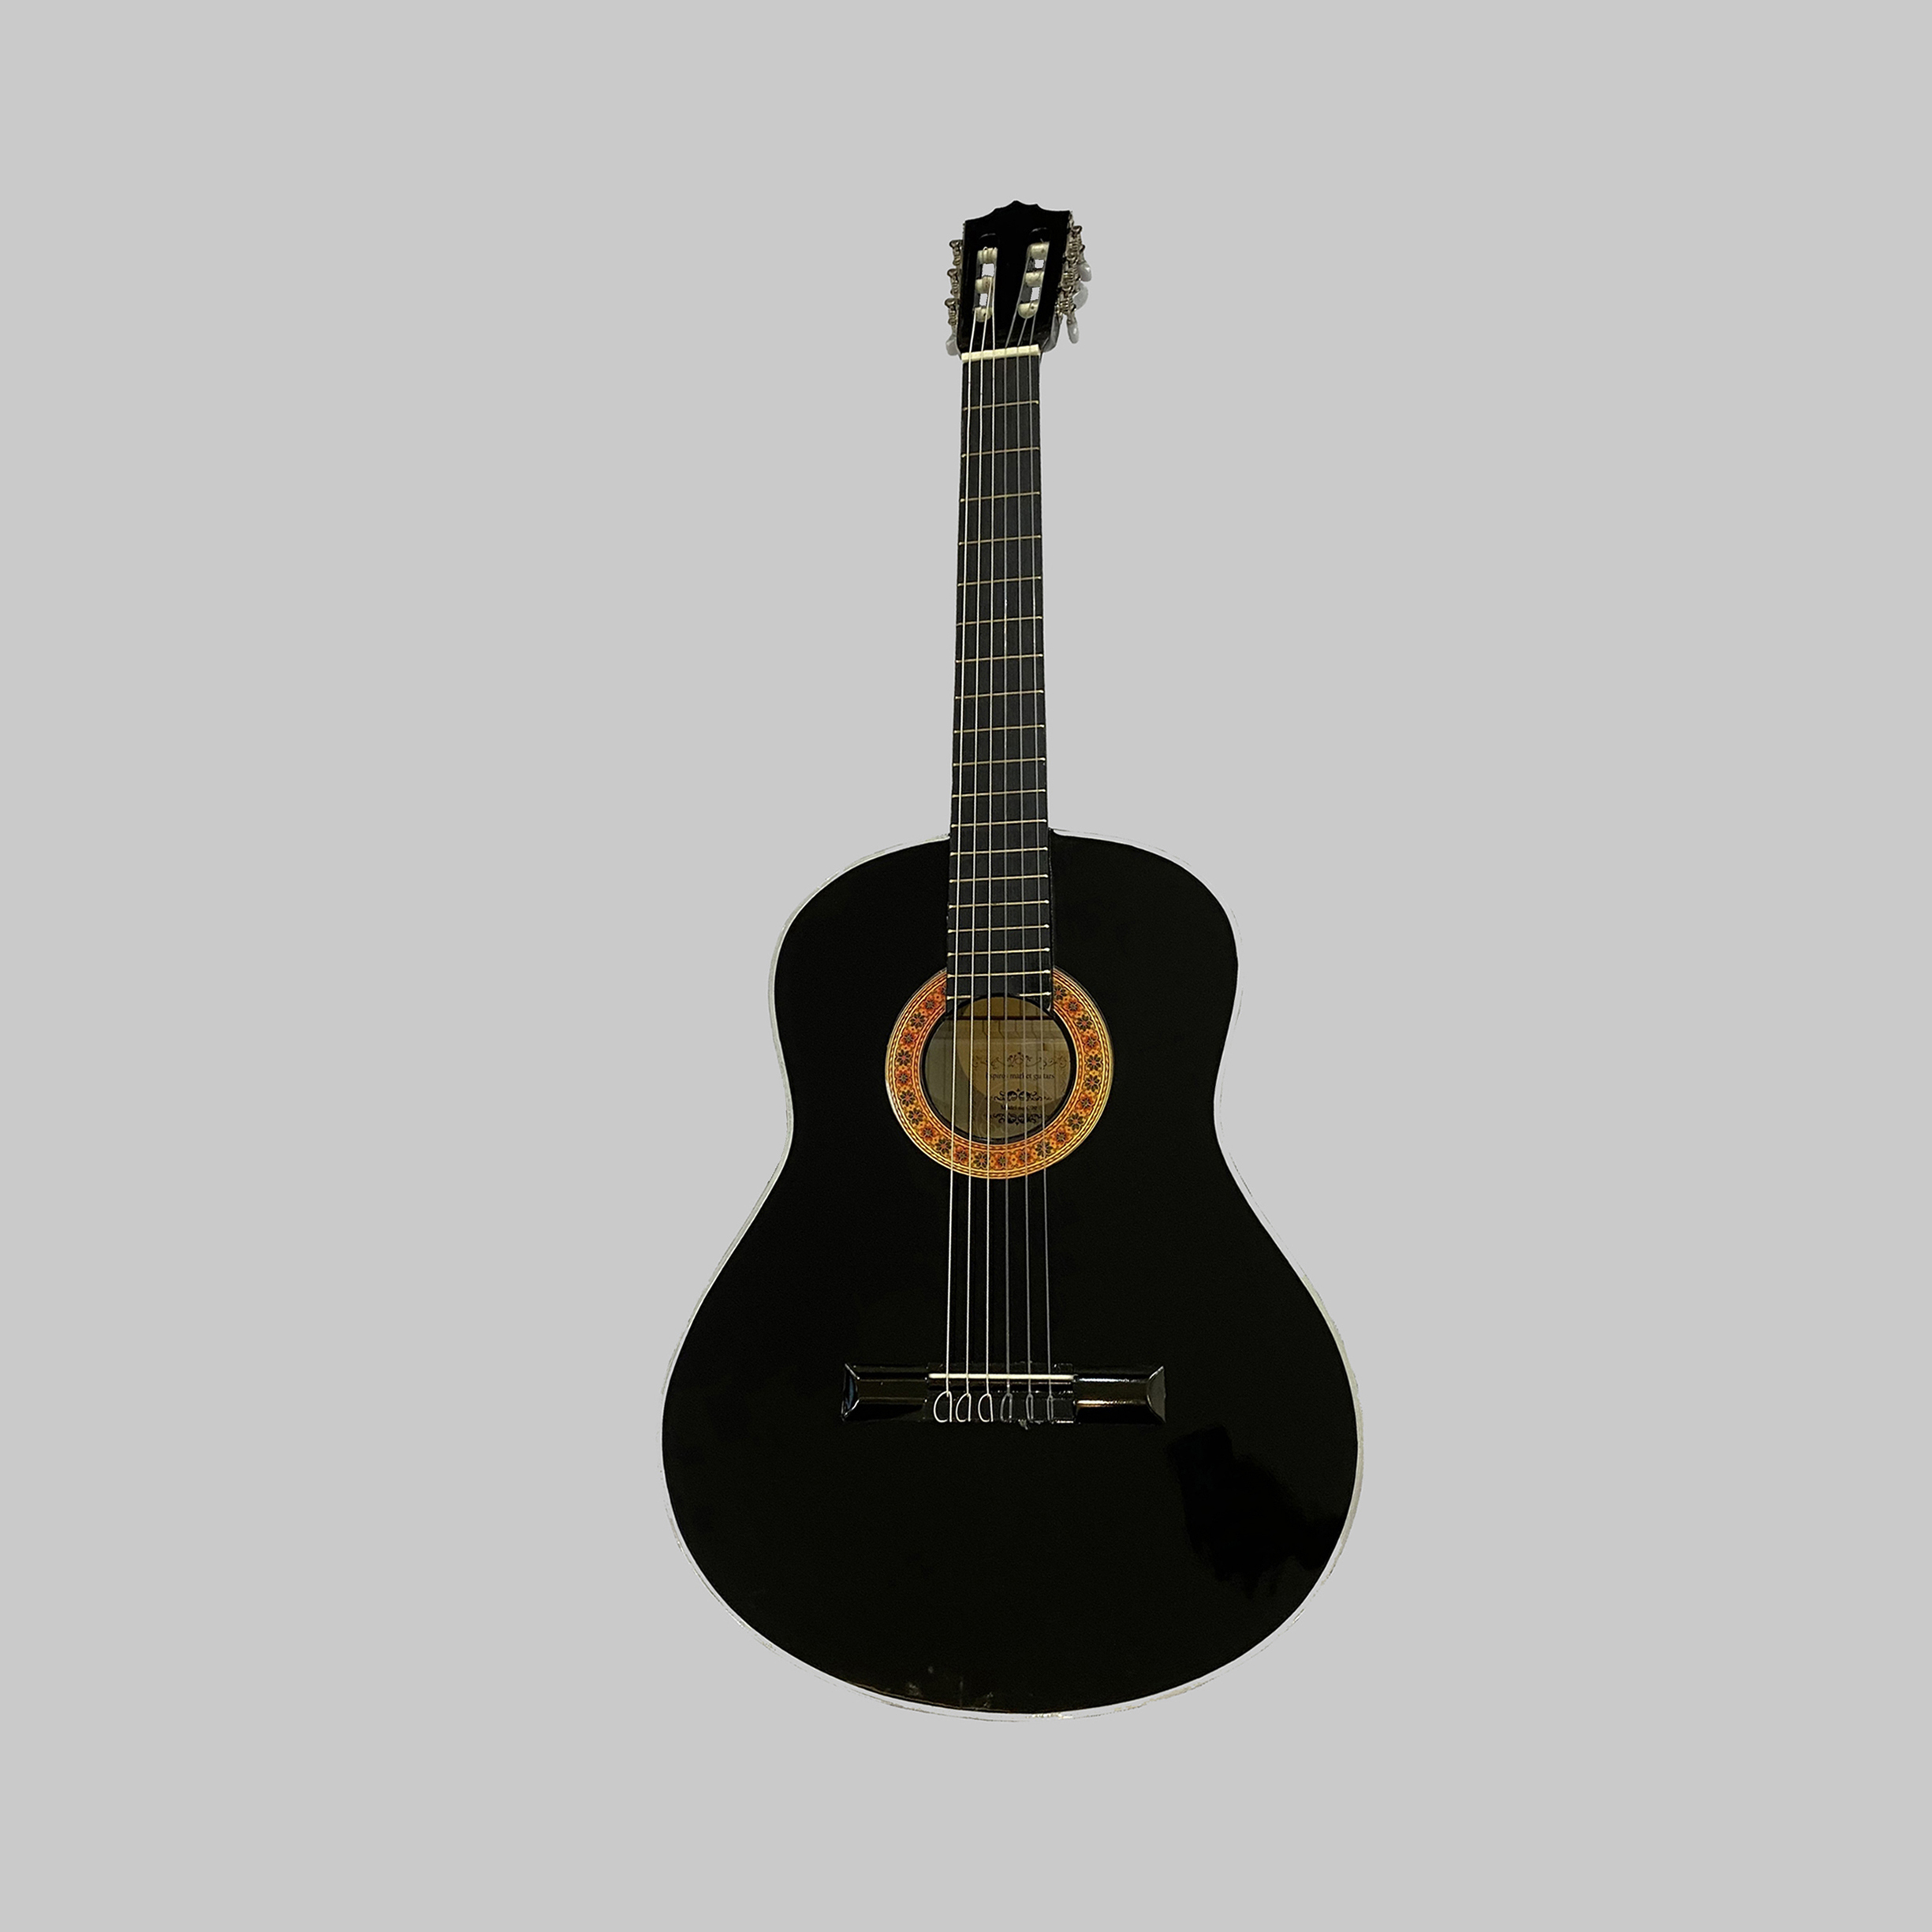 نکته خرید - قیمت روز گیتار کلاسیک اسپیروس مارکت مدل C80 خرید